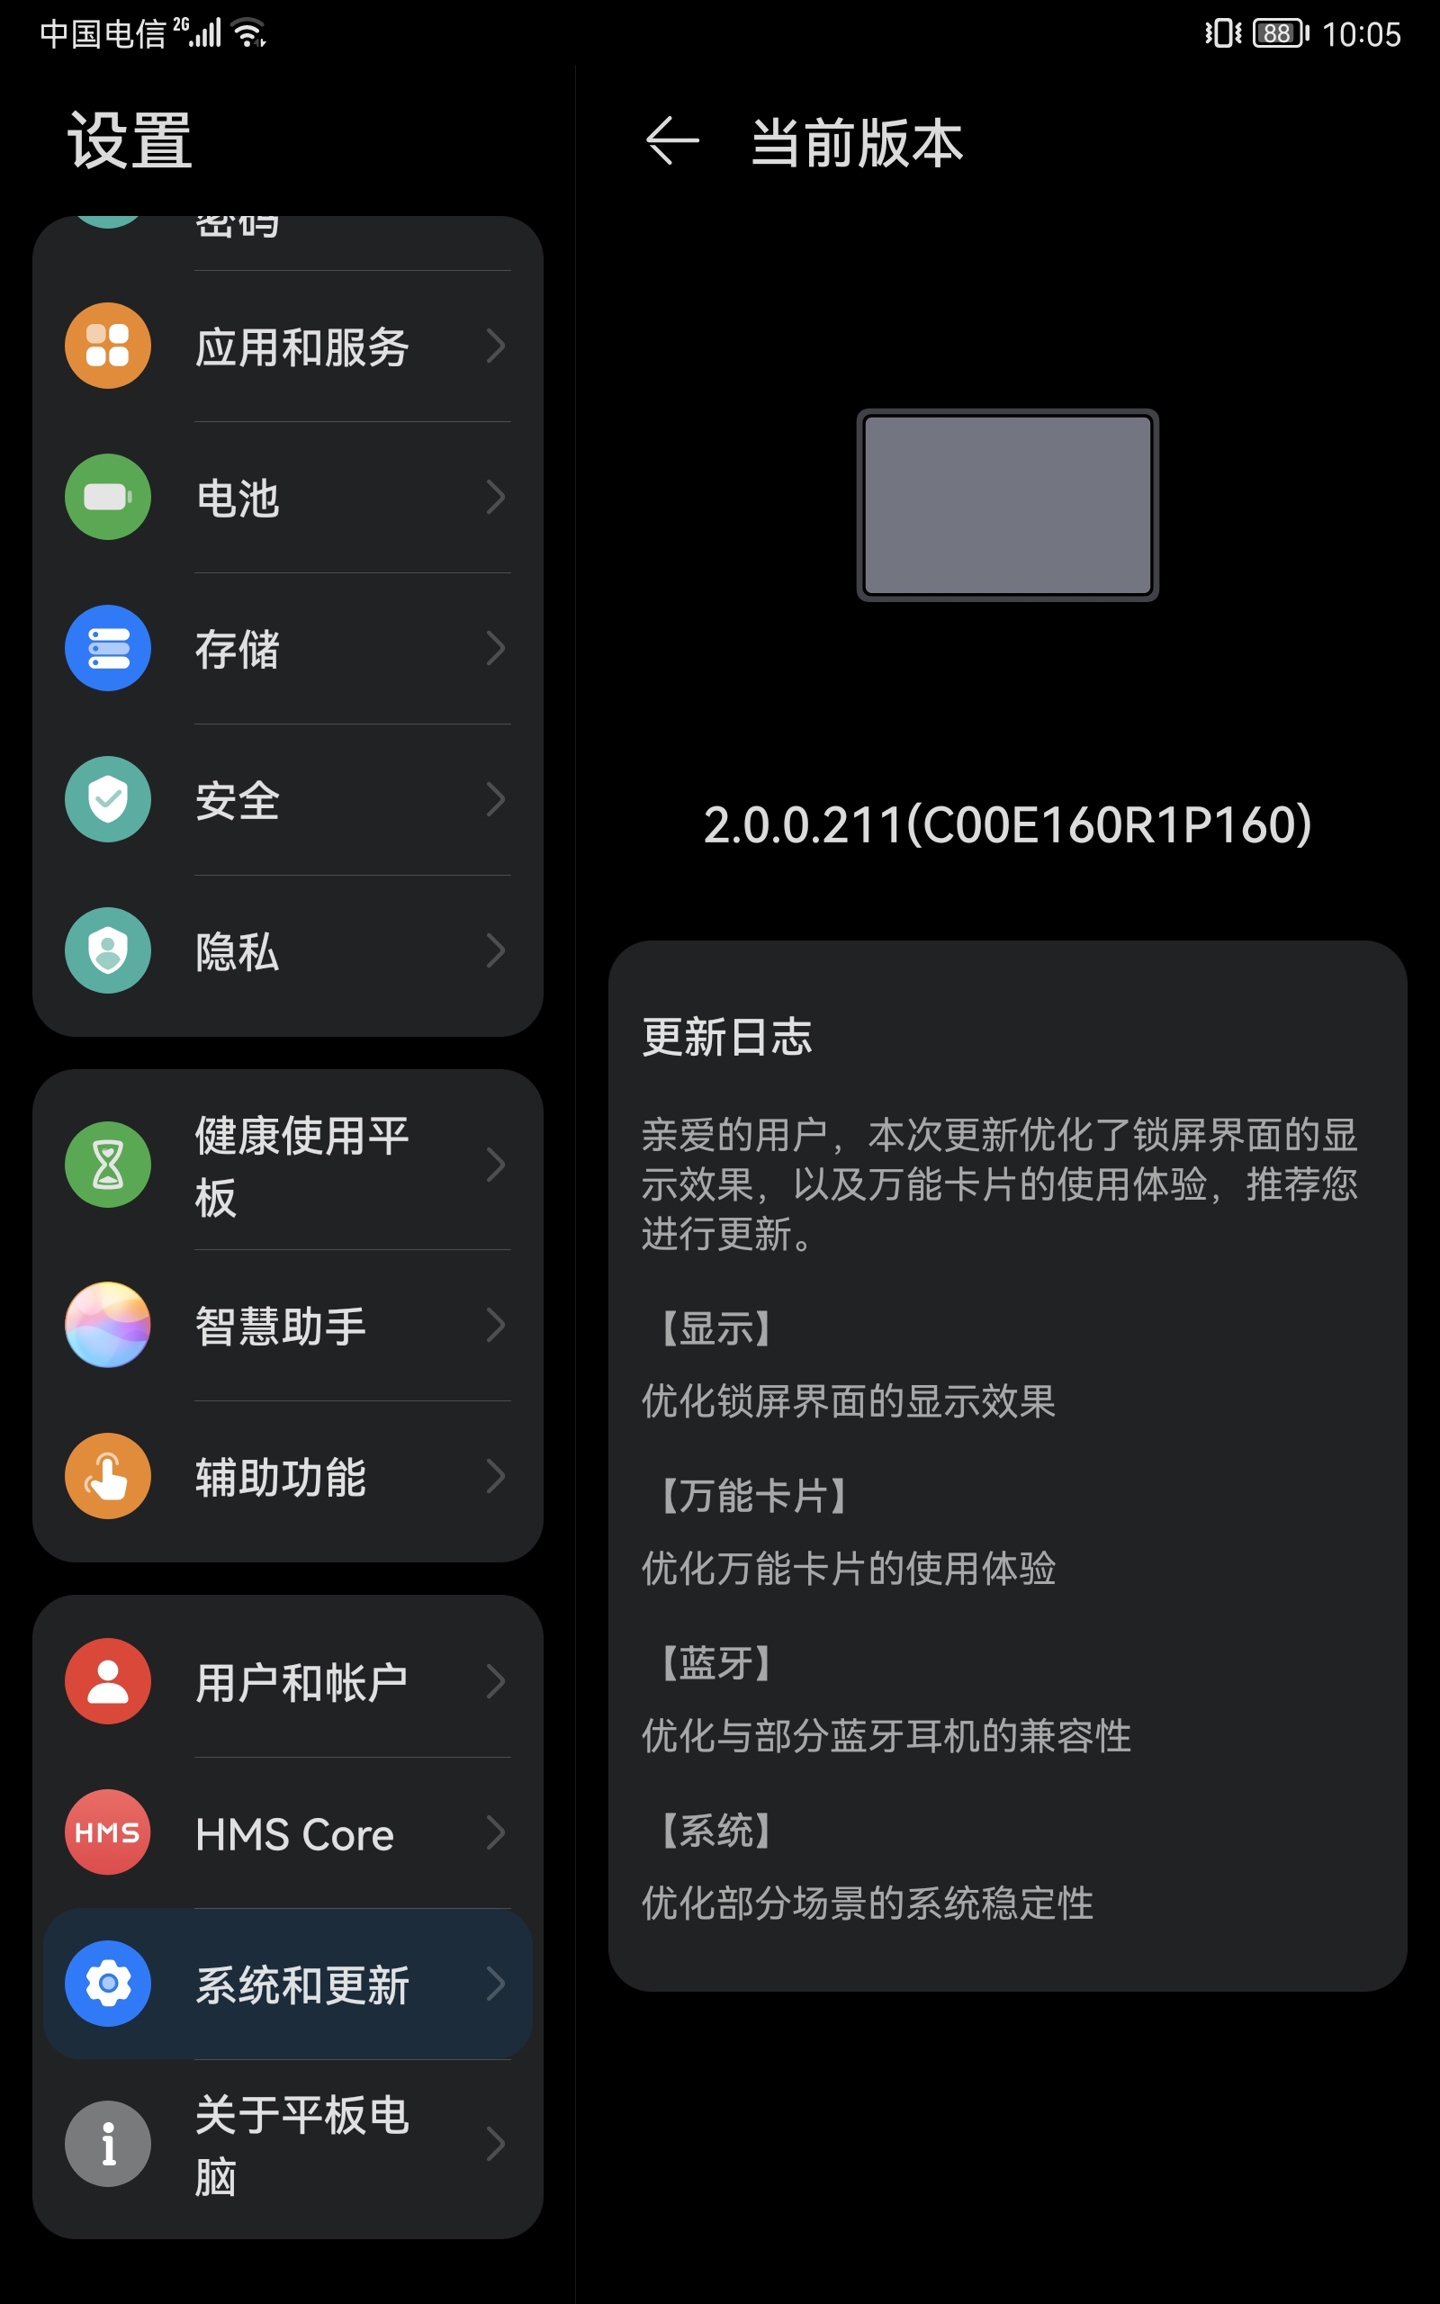 Huawei MediaPad M6 turbo edition HarmonyOS 2.0.0.211